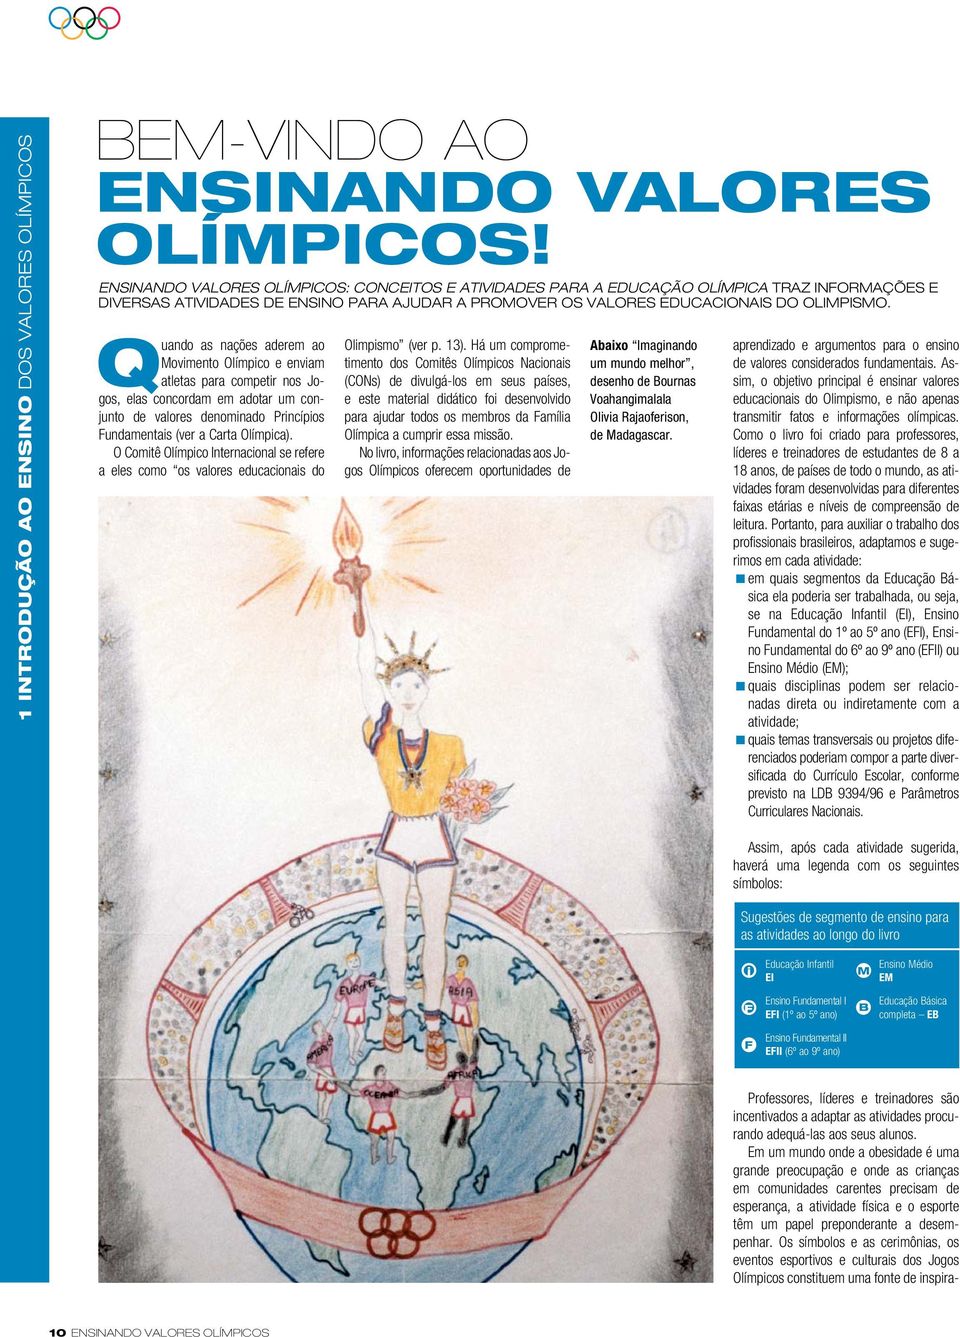 Os símbolos e as cerimônias, os eventos esportivos e culturais dos Jogos Olímpicos constituem uma fonte de inspirabem-vindo AO ENSINANDO VALORES OLÍMPICOS!